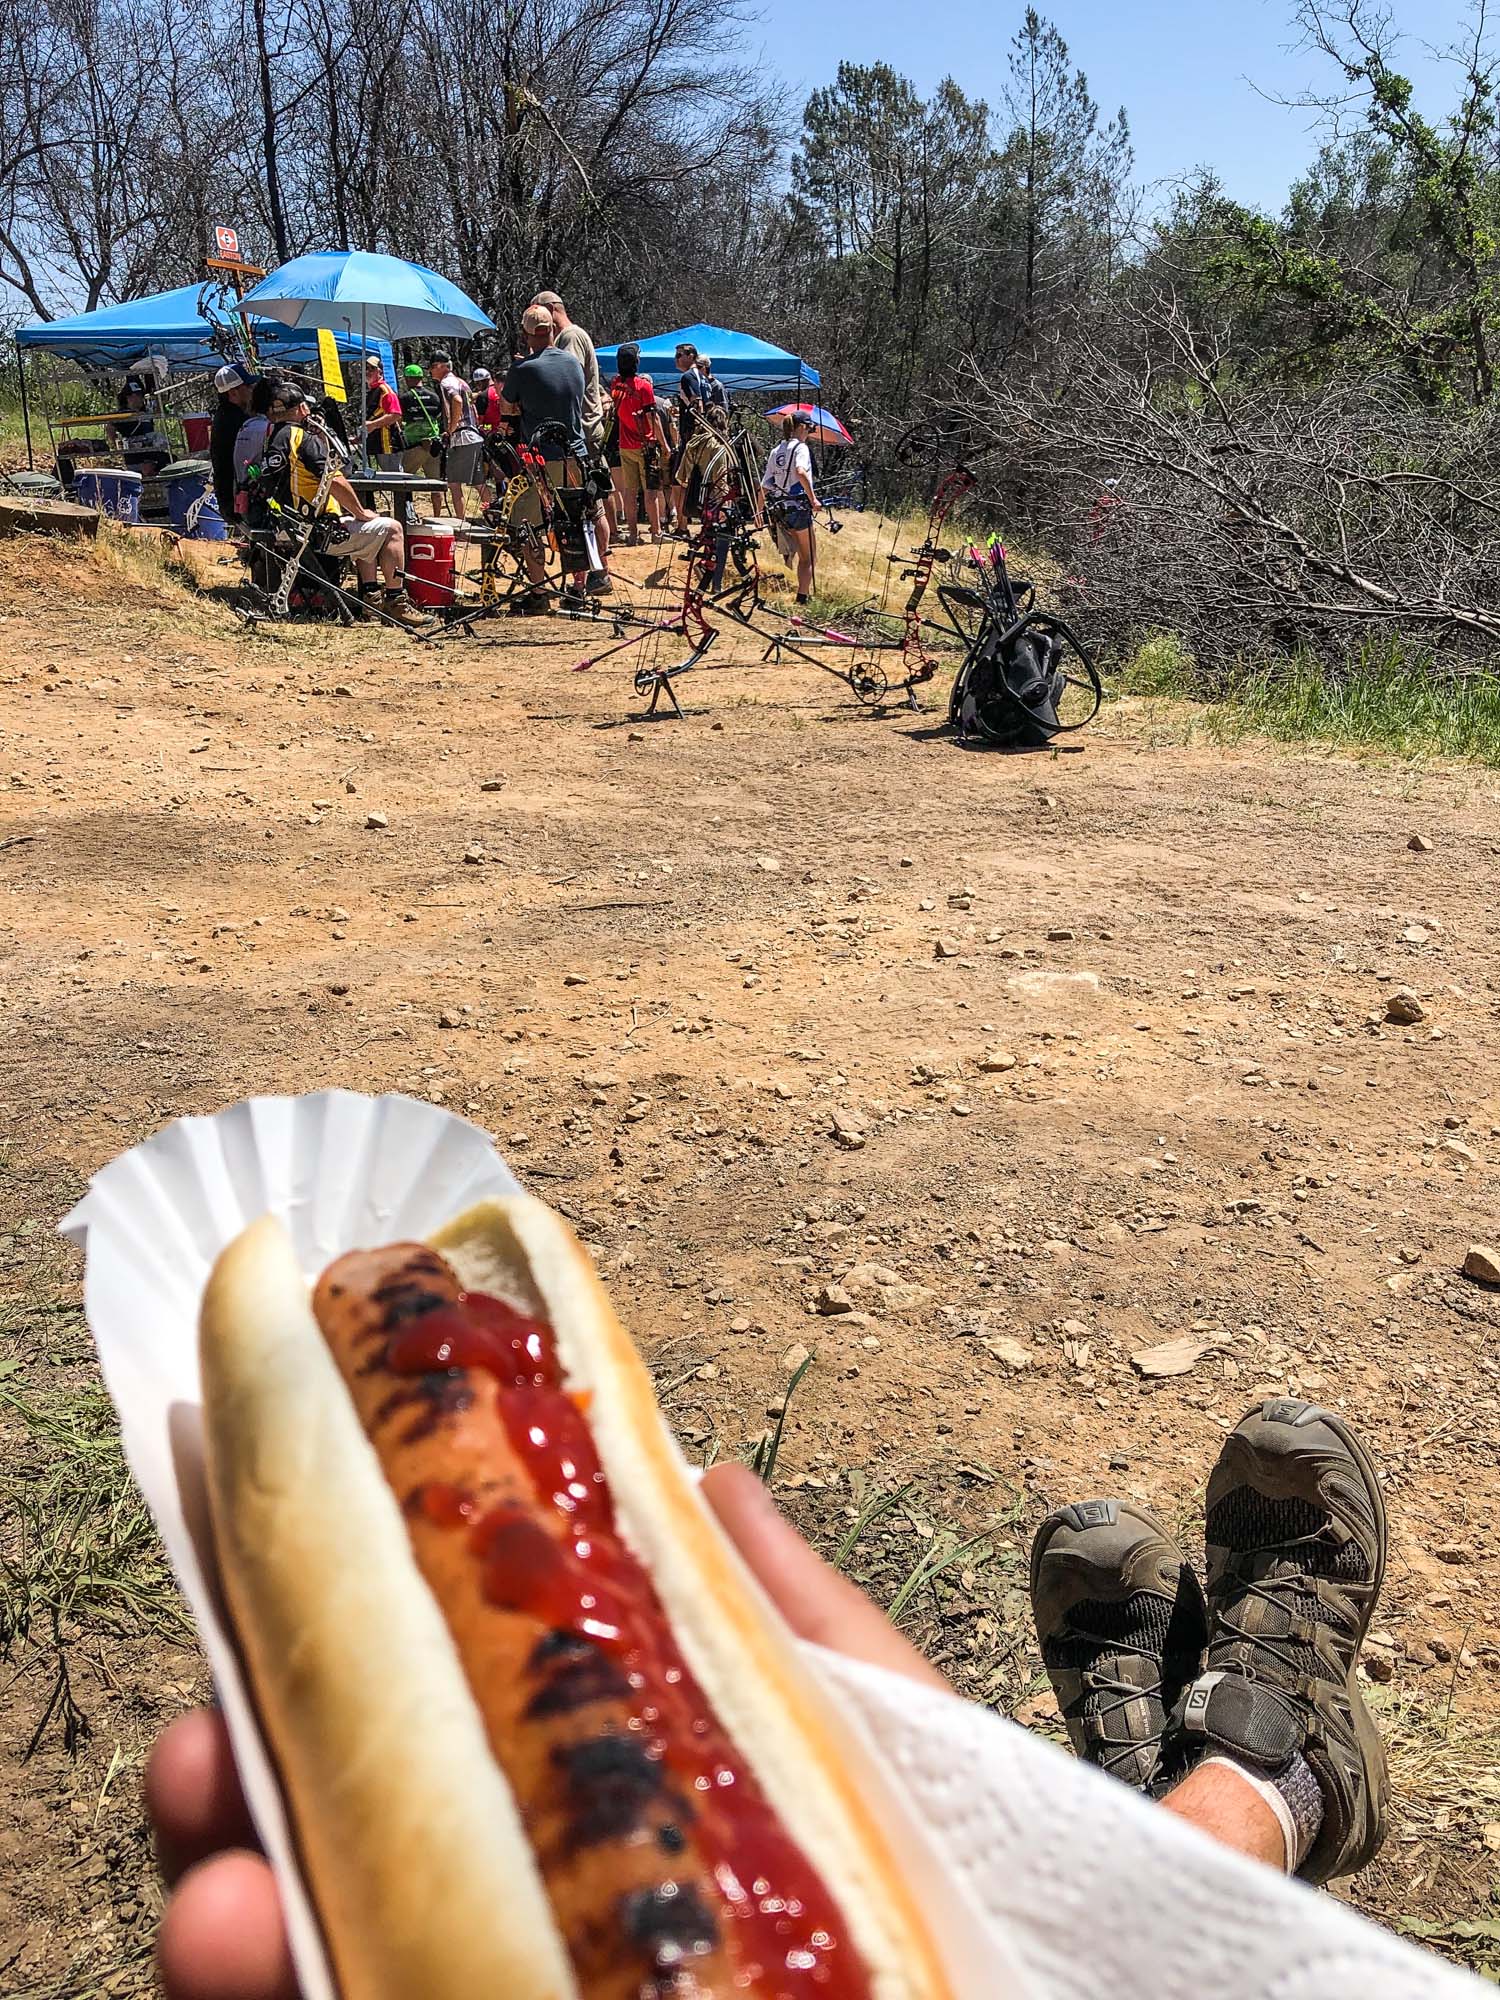 Redding hot dog